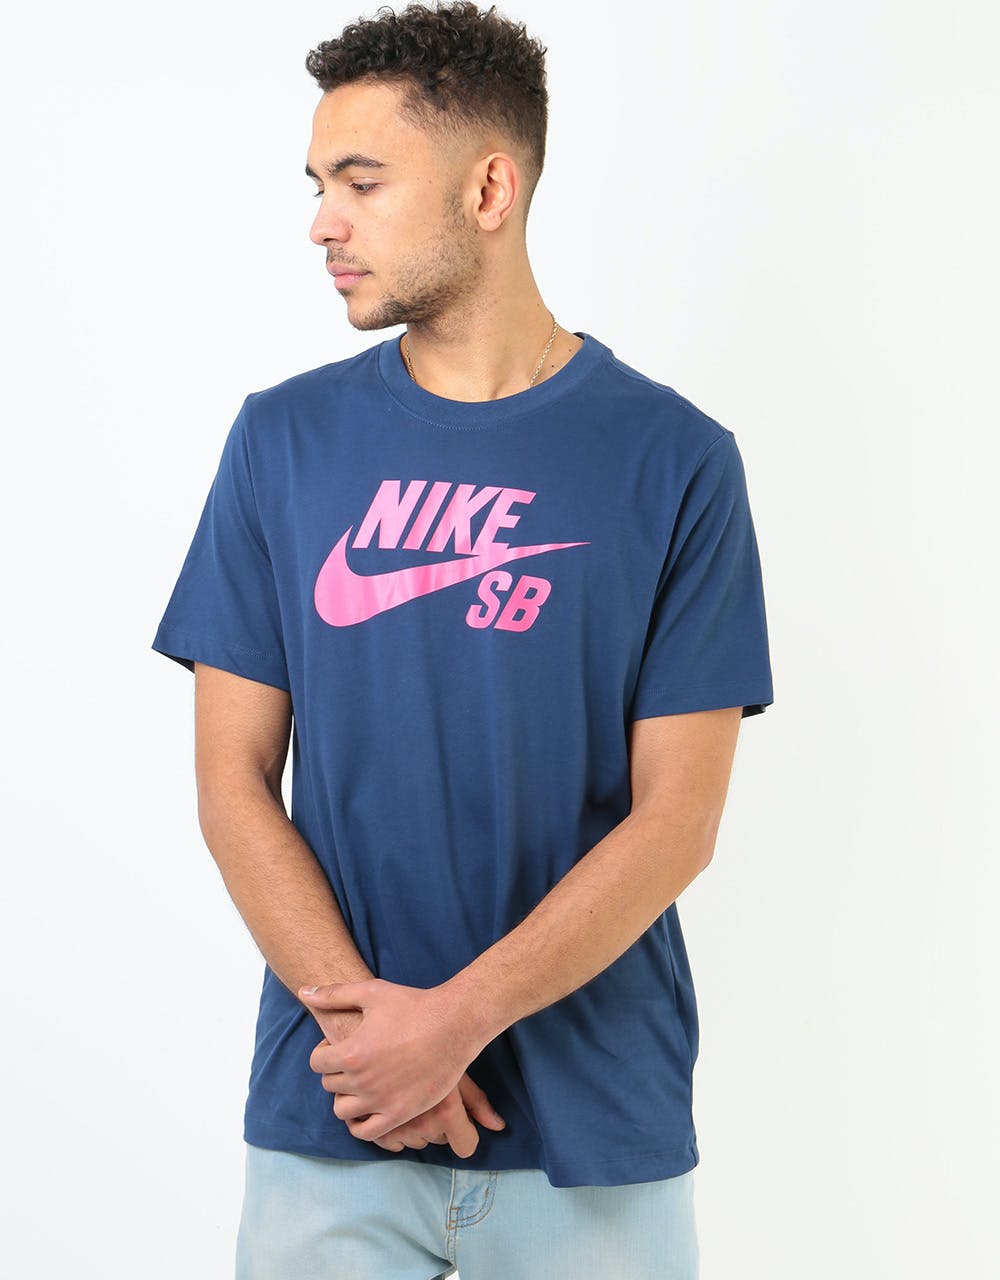 Nike SB Logo Dri-Fit T-Shirt - Midnight Navy/Watermelon